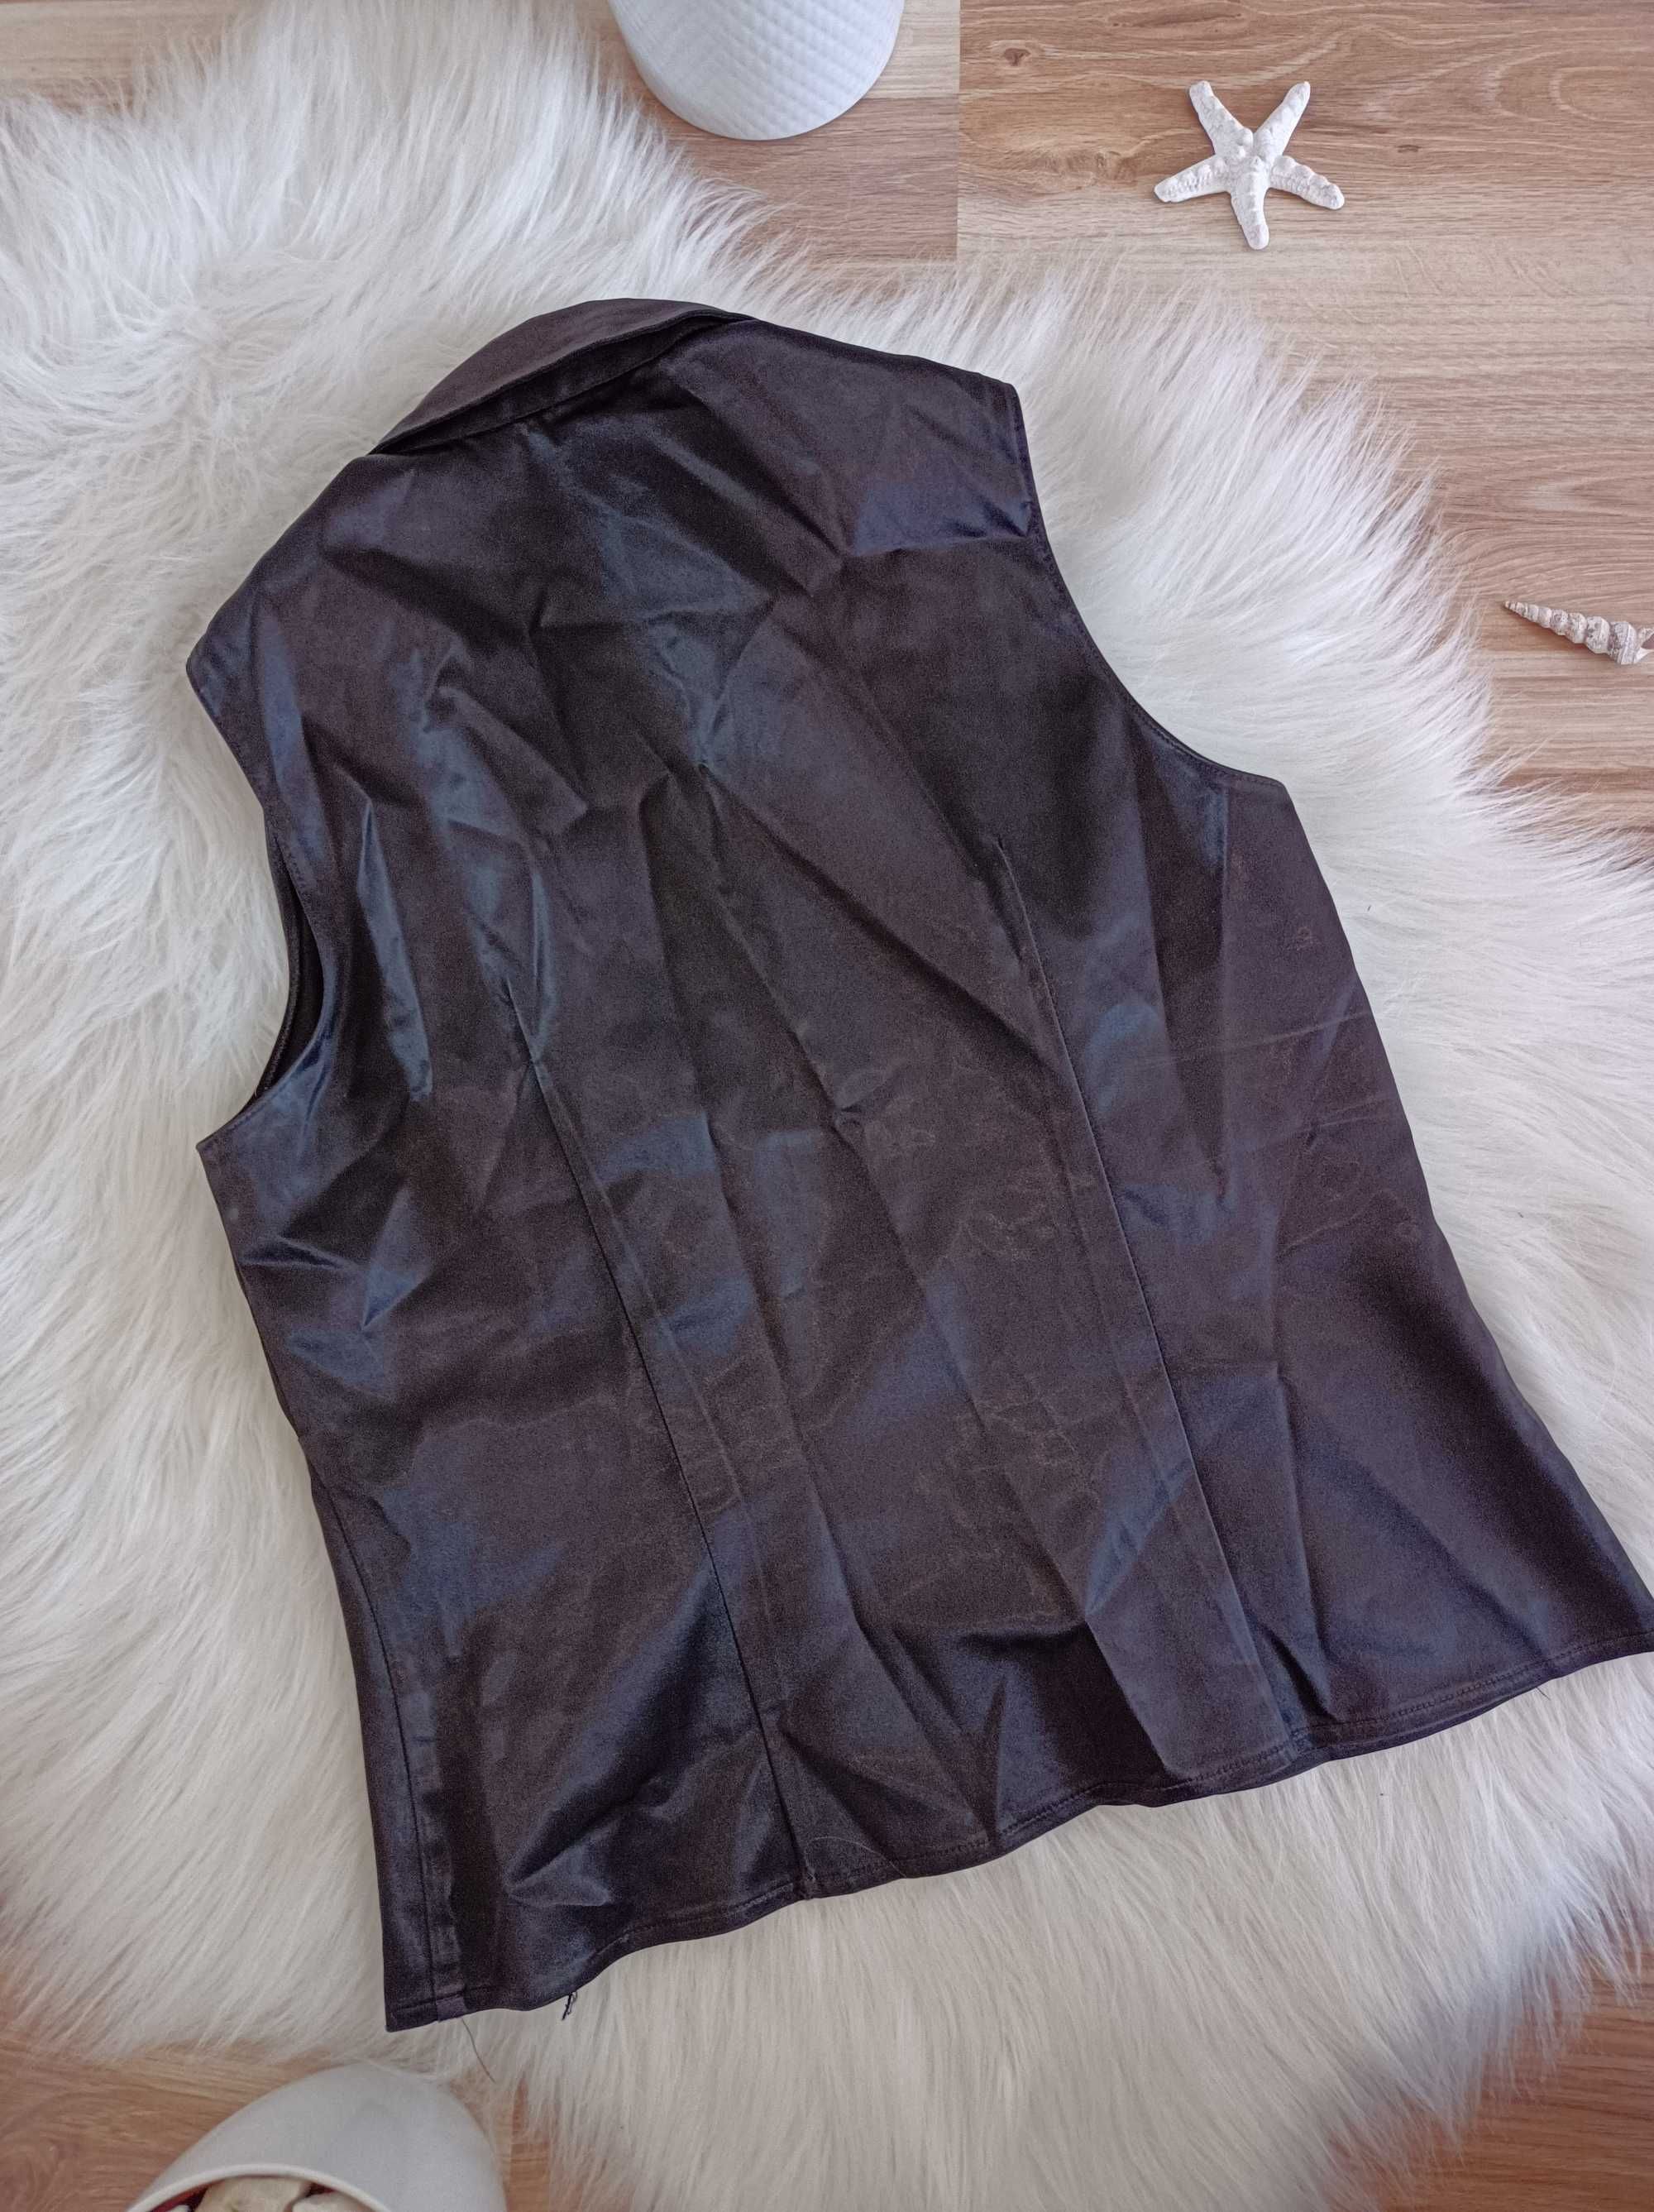 Koszula satynowa czarna New Look elegancka damska 38/40 m L